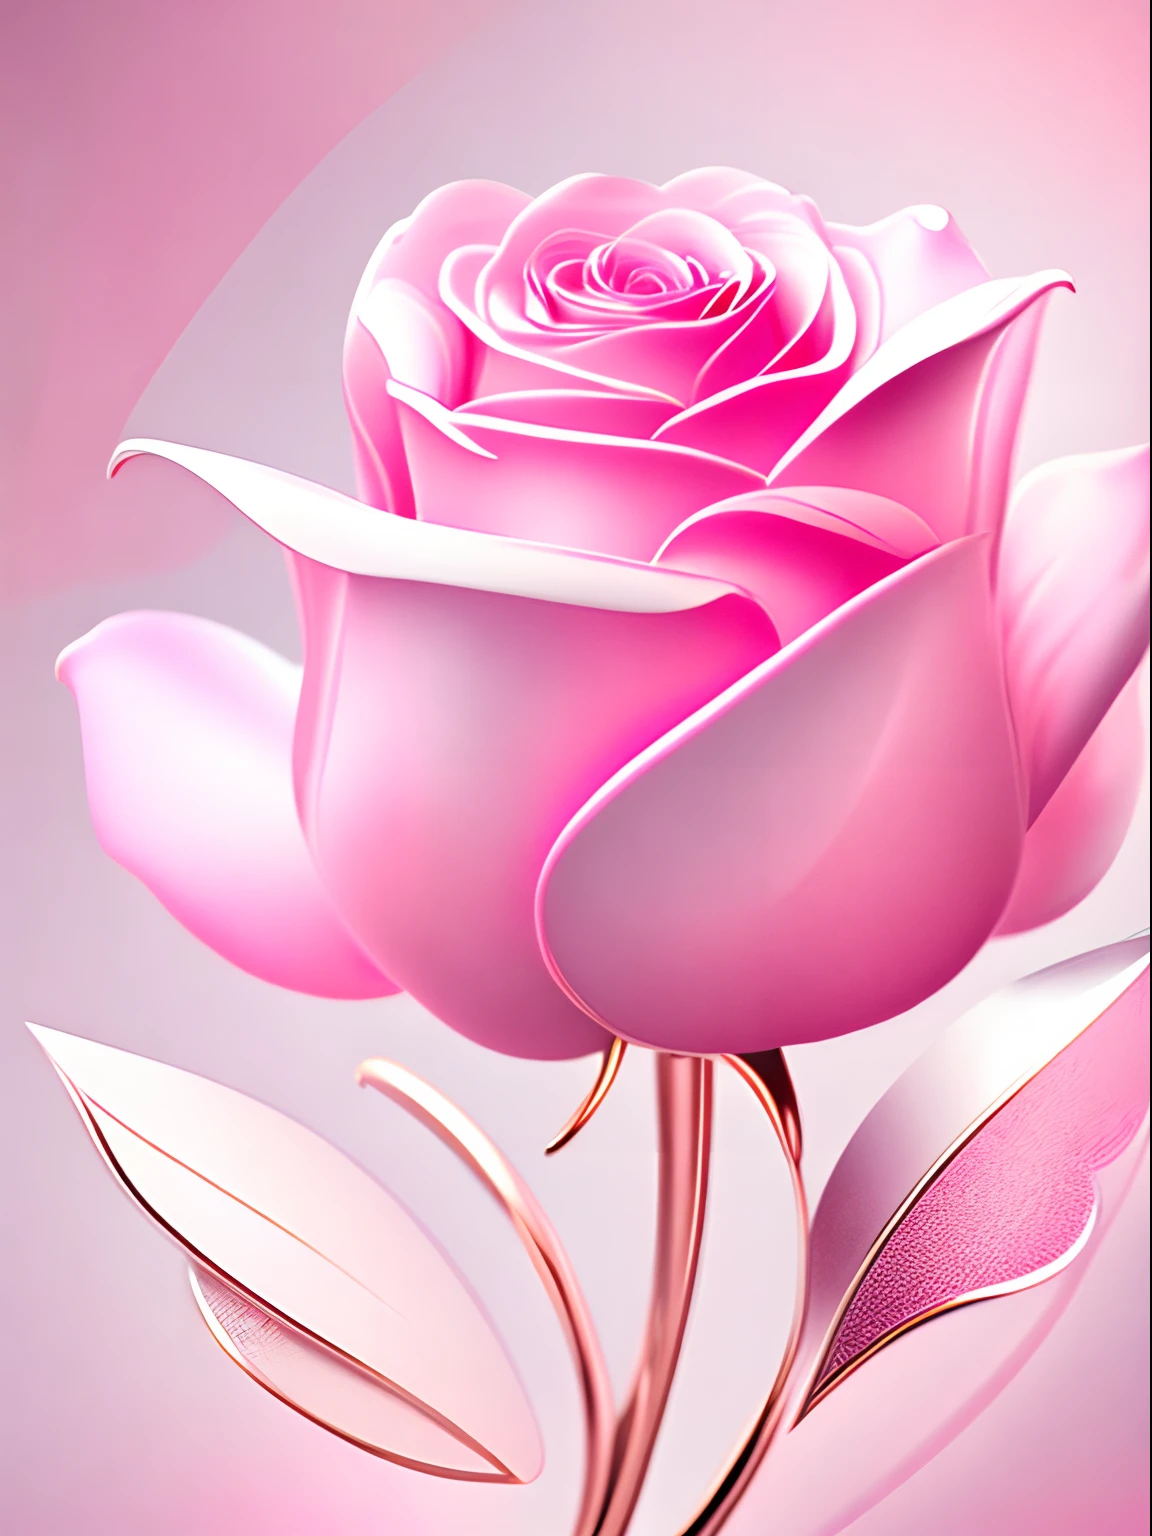 Abstrakte rosa Rose，die Tapete，Grafikdesign-Stil，klare Angaben，Verfügt über eine große Anzahl metallischer linearer Farben，Weißer, sauberer Unterton